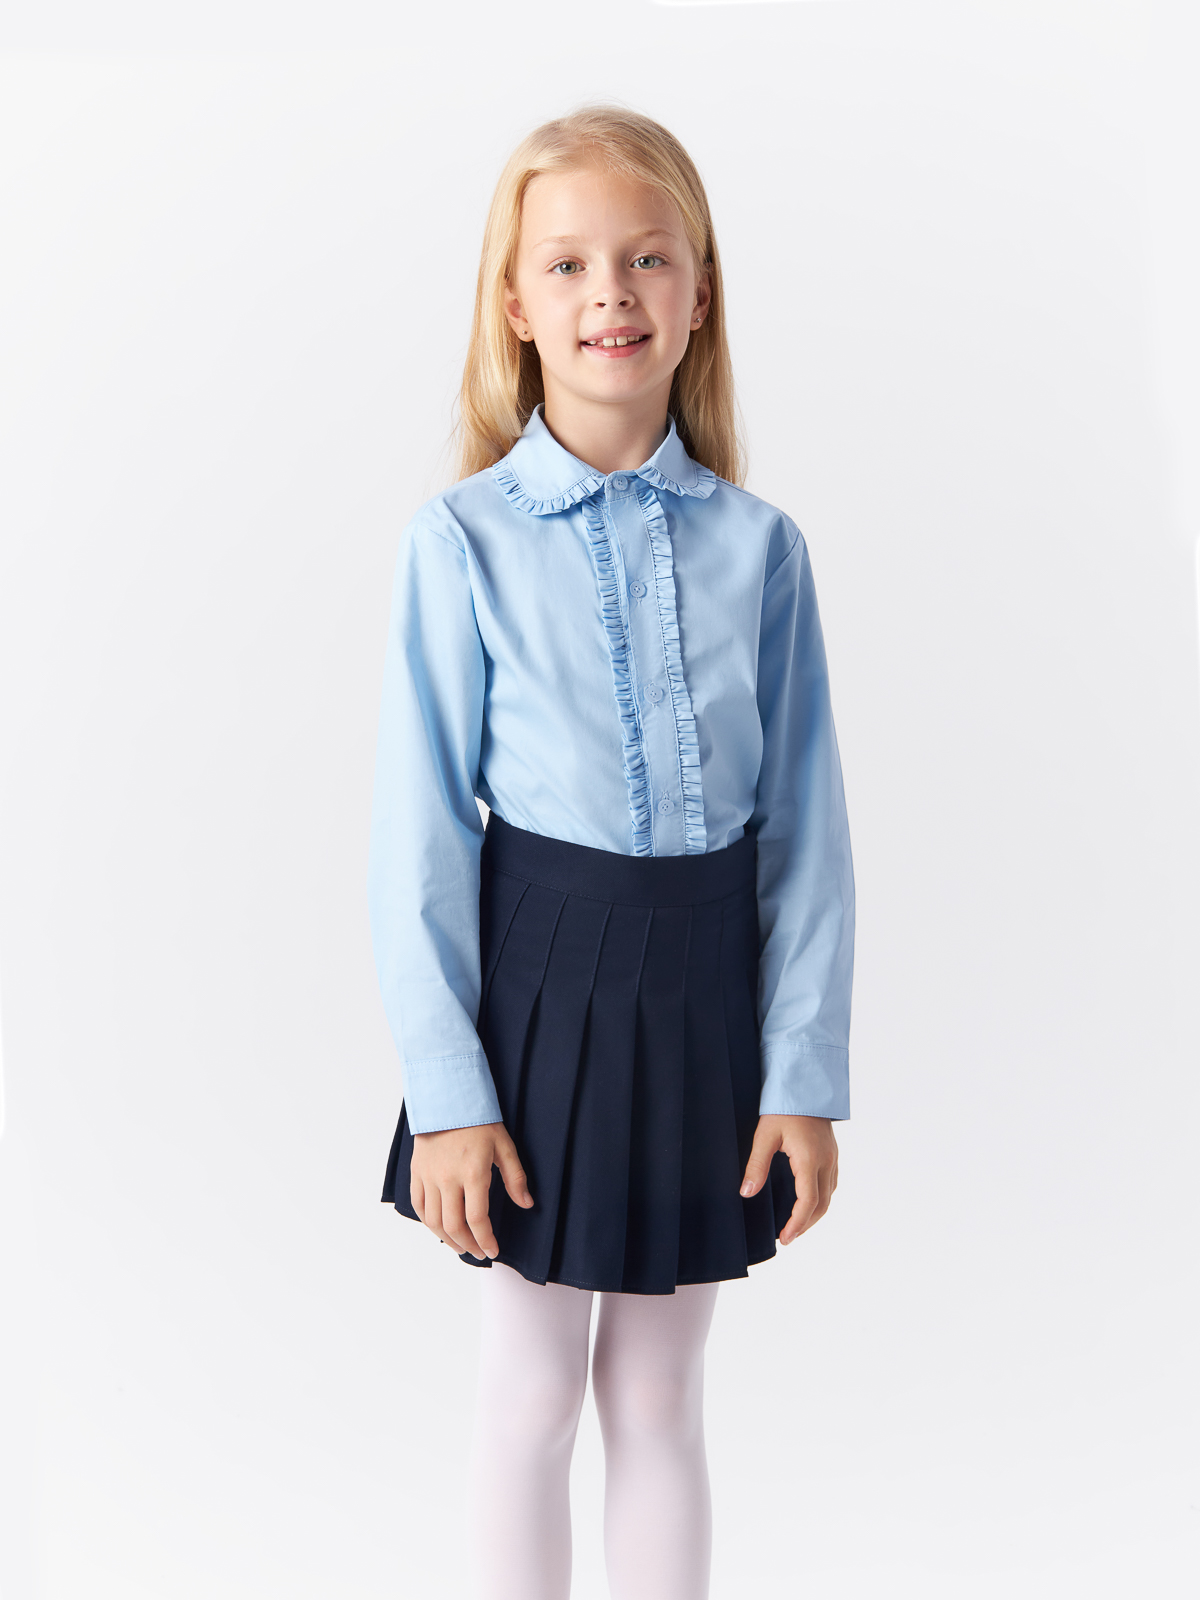 Блузка Yiwu Xflot Supply Chain детская, BS-2blue, размер 160 см блузка трикотажная школьная белая button blue 134